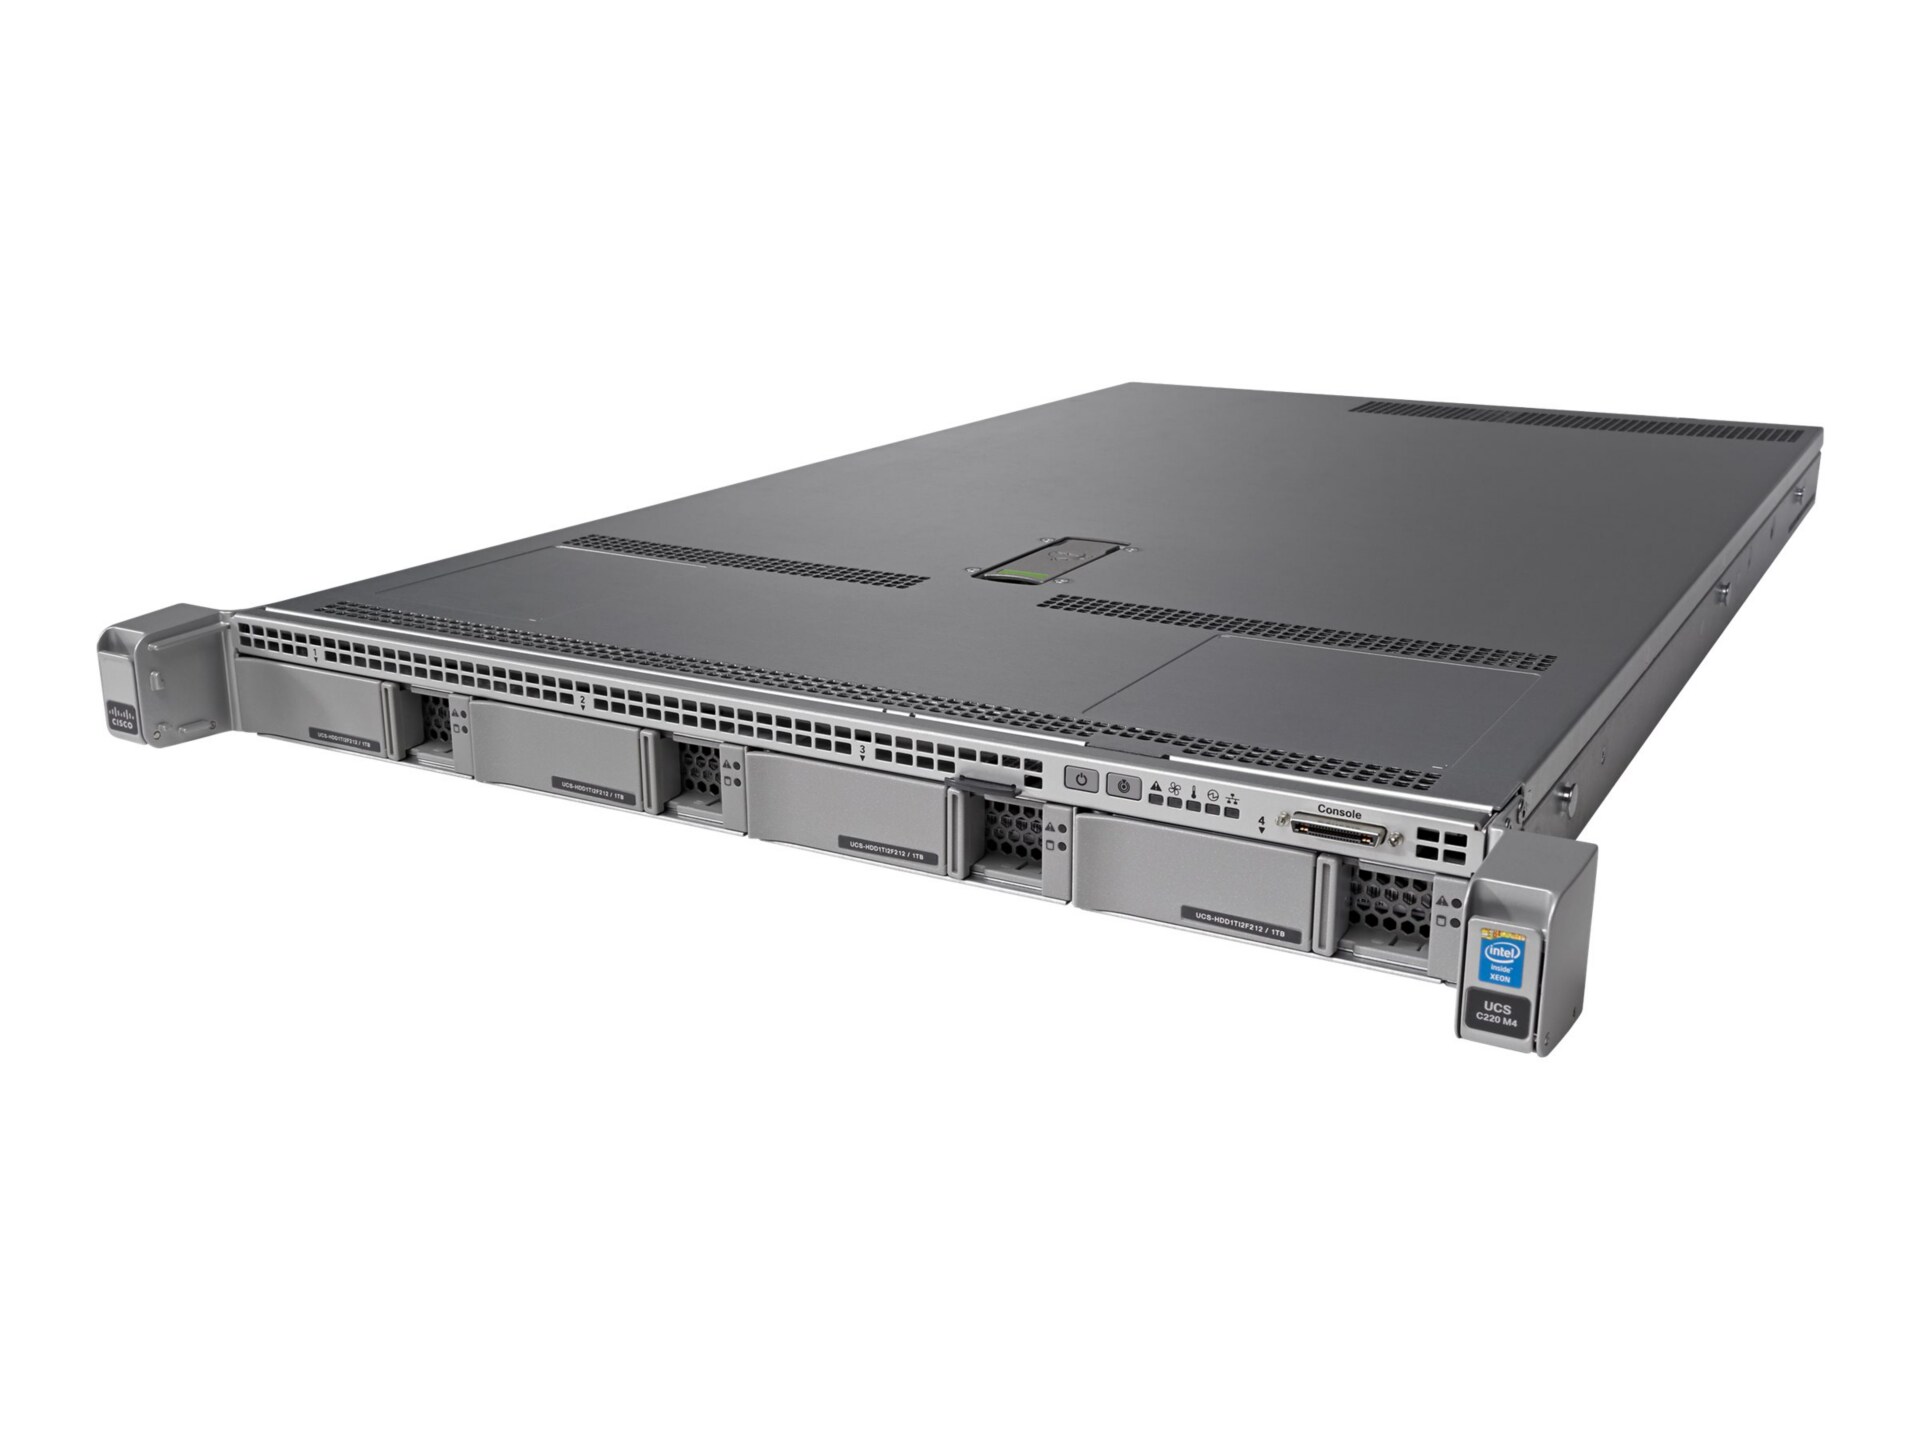 Cisco UCS SmartPlay Select C220 M4 Standard 1 - rack-mountable - Xeon E5-26